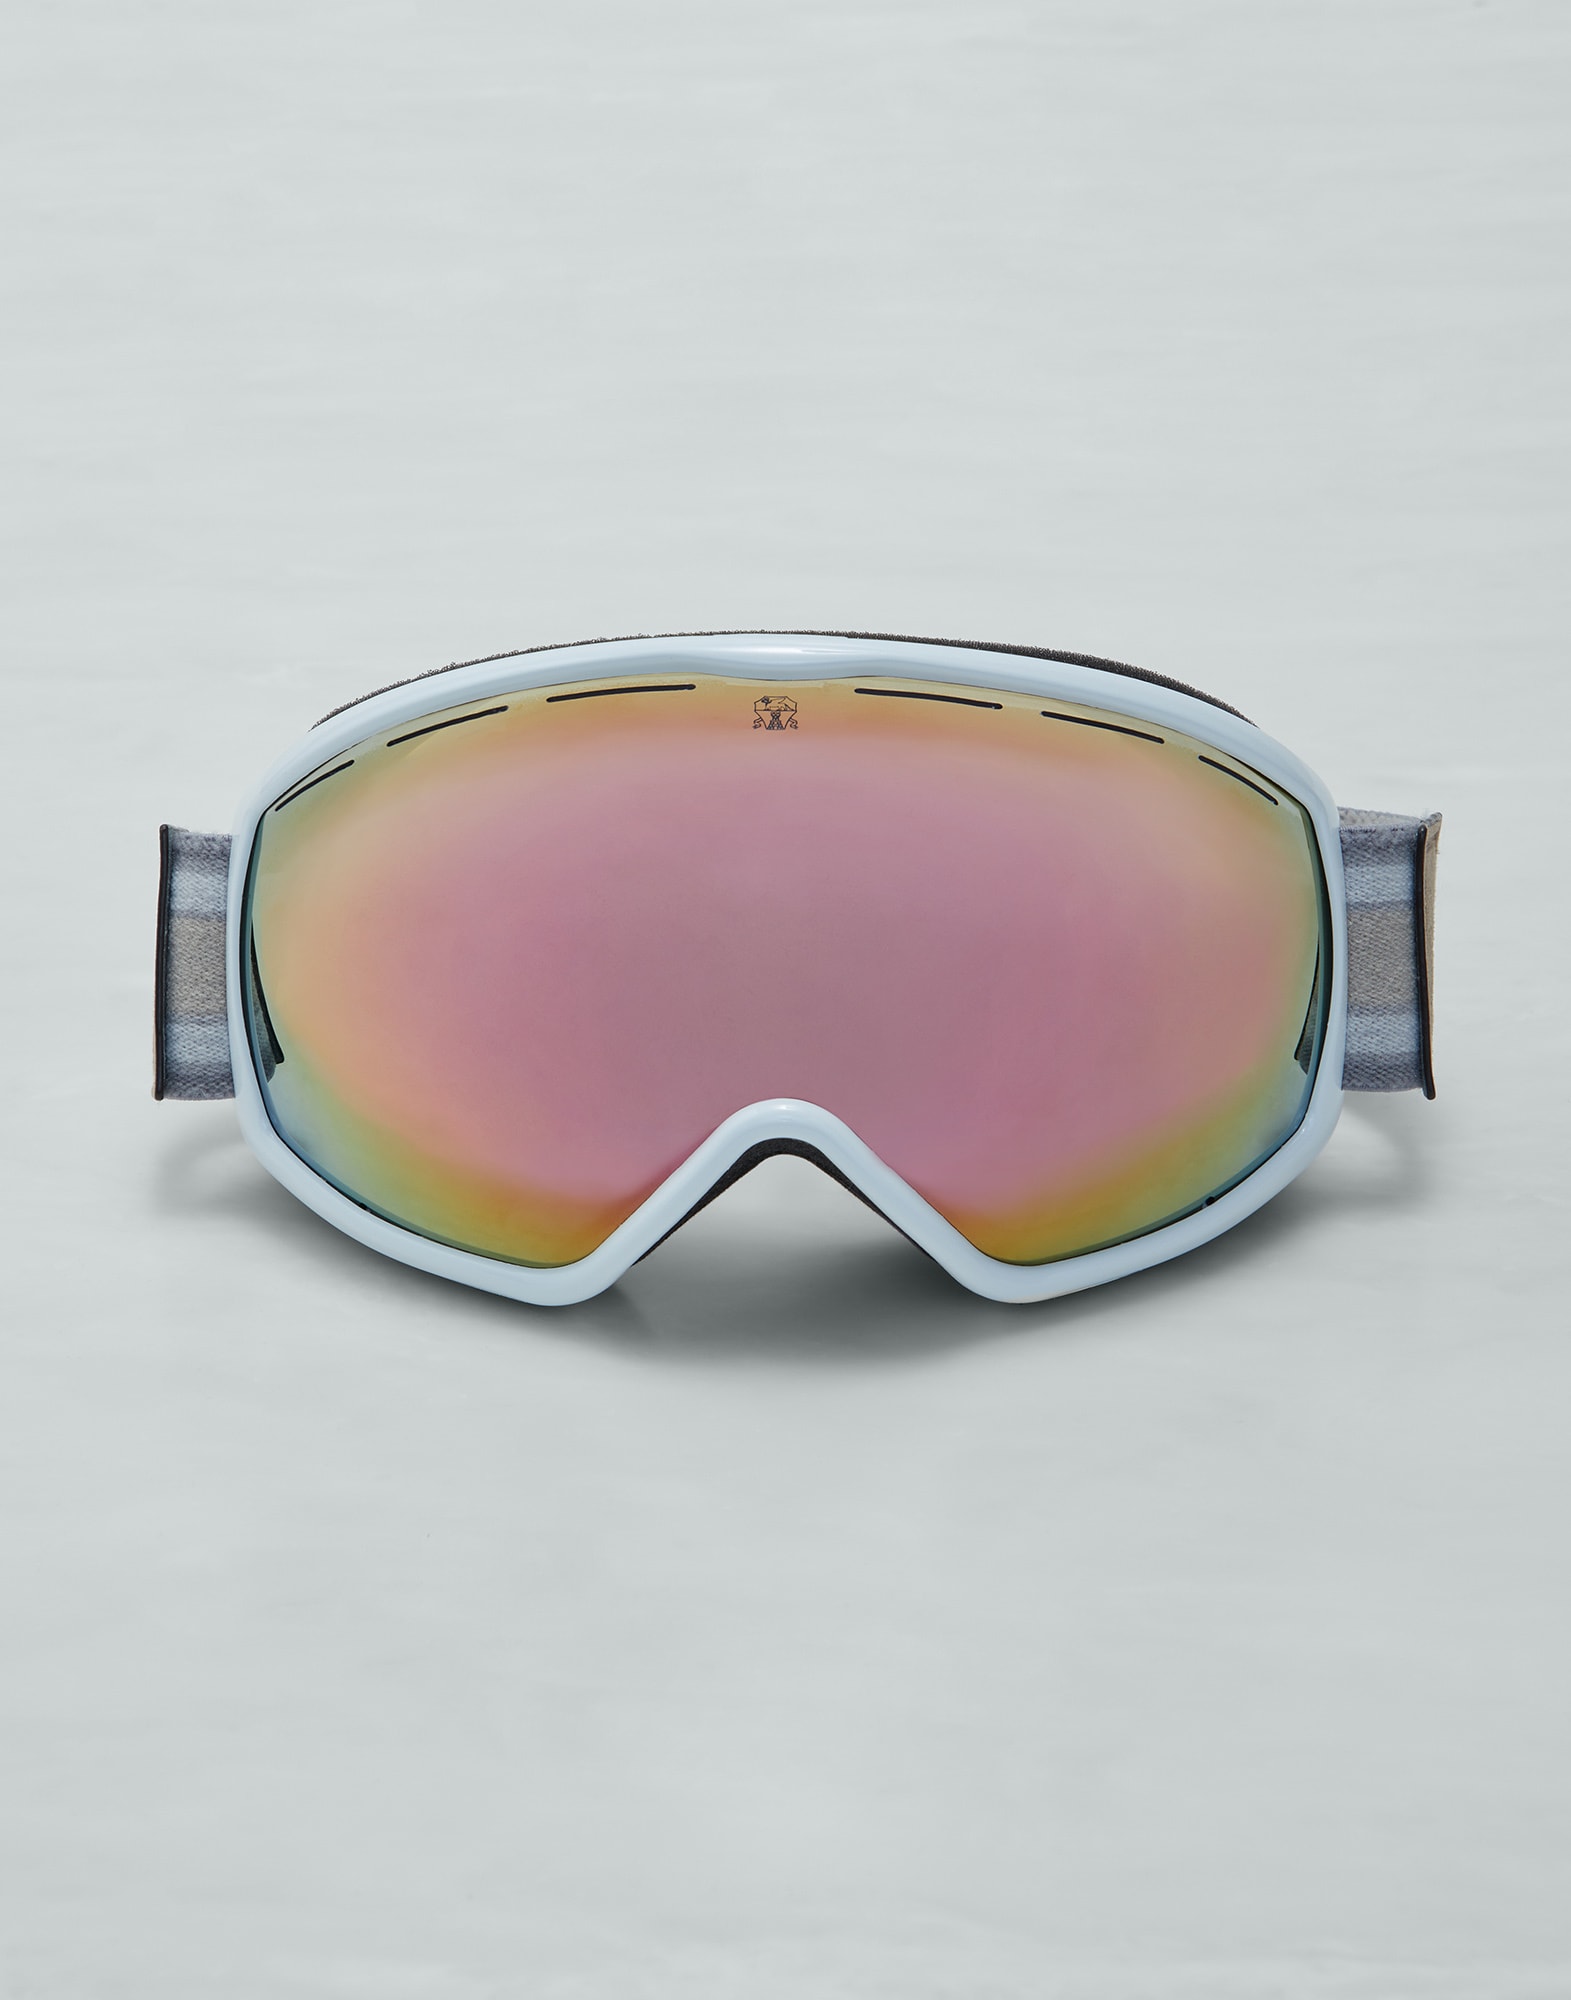 Aspen ski goggles